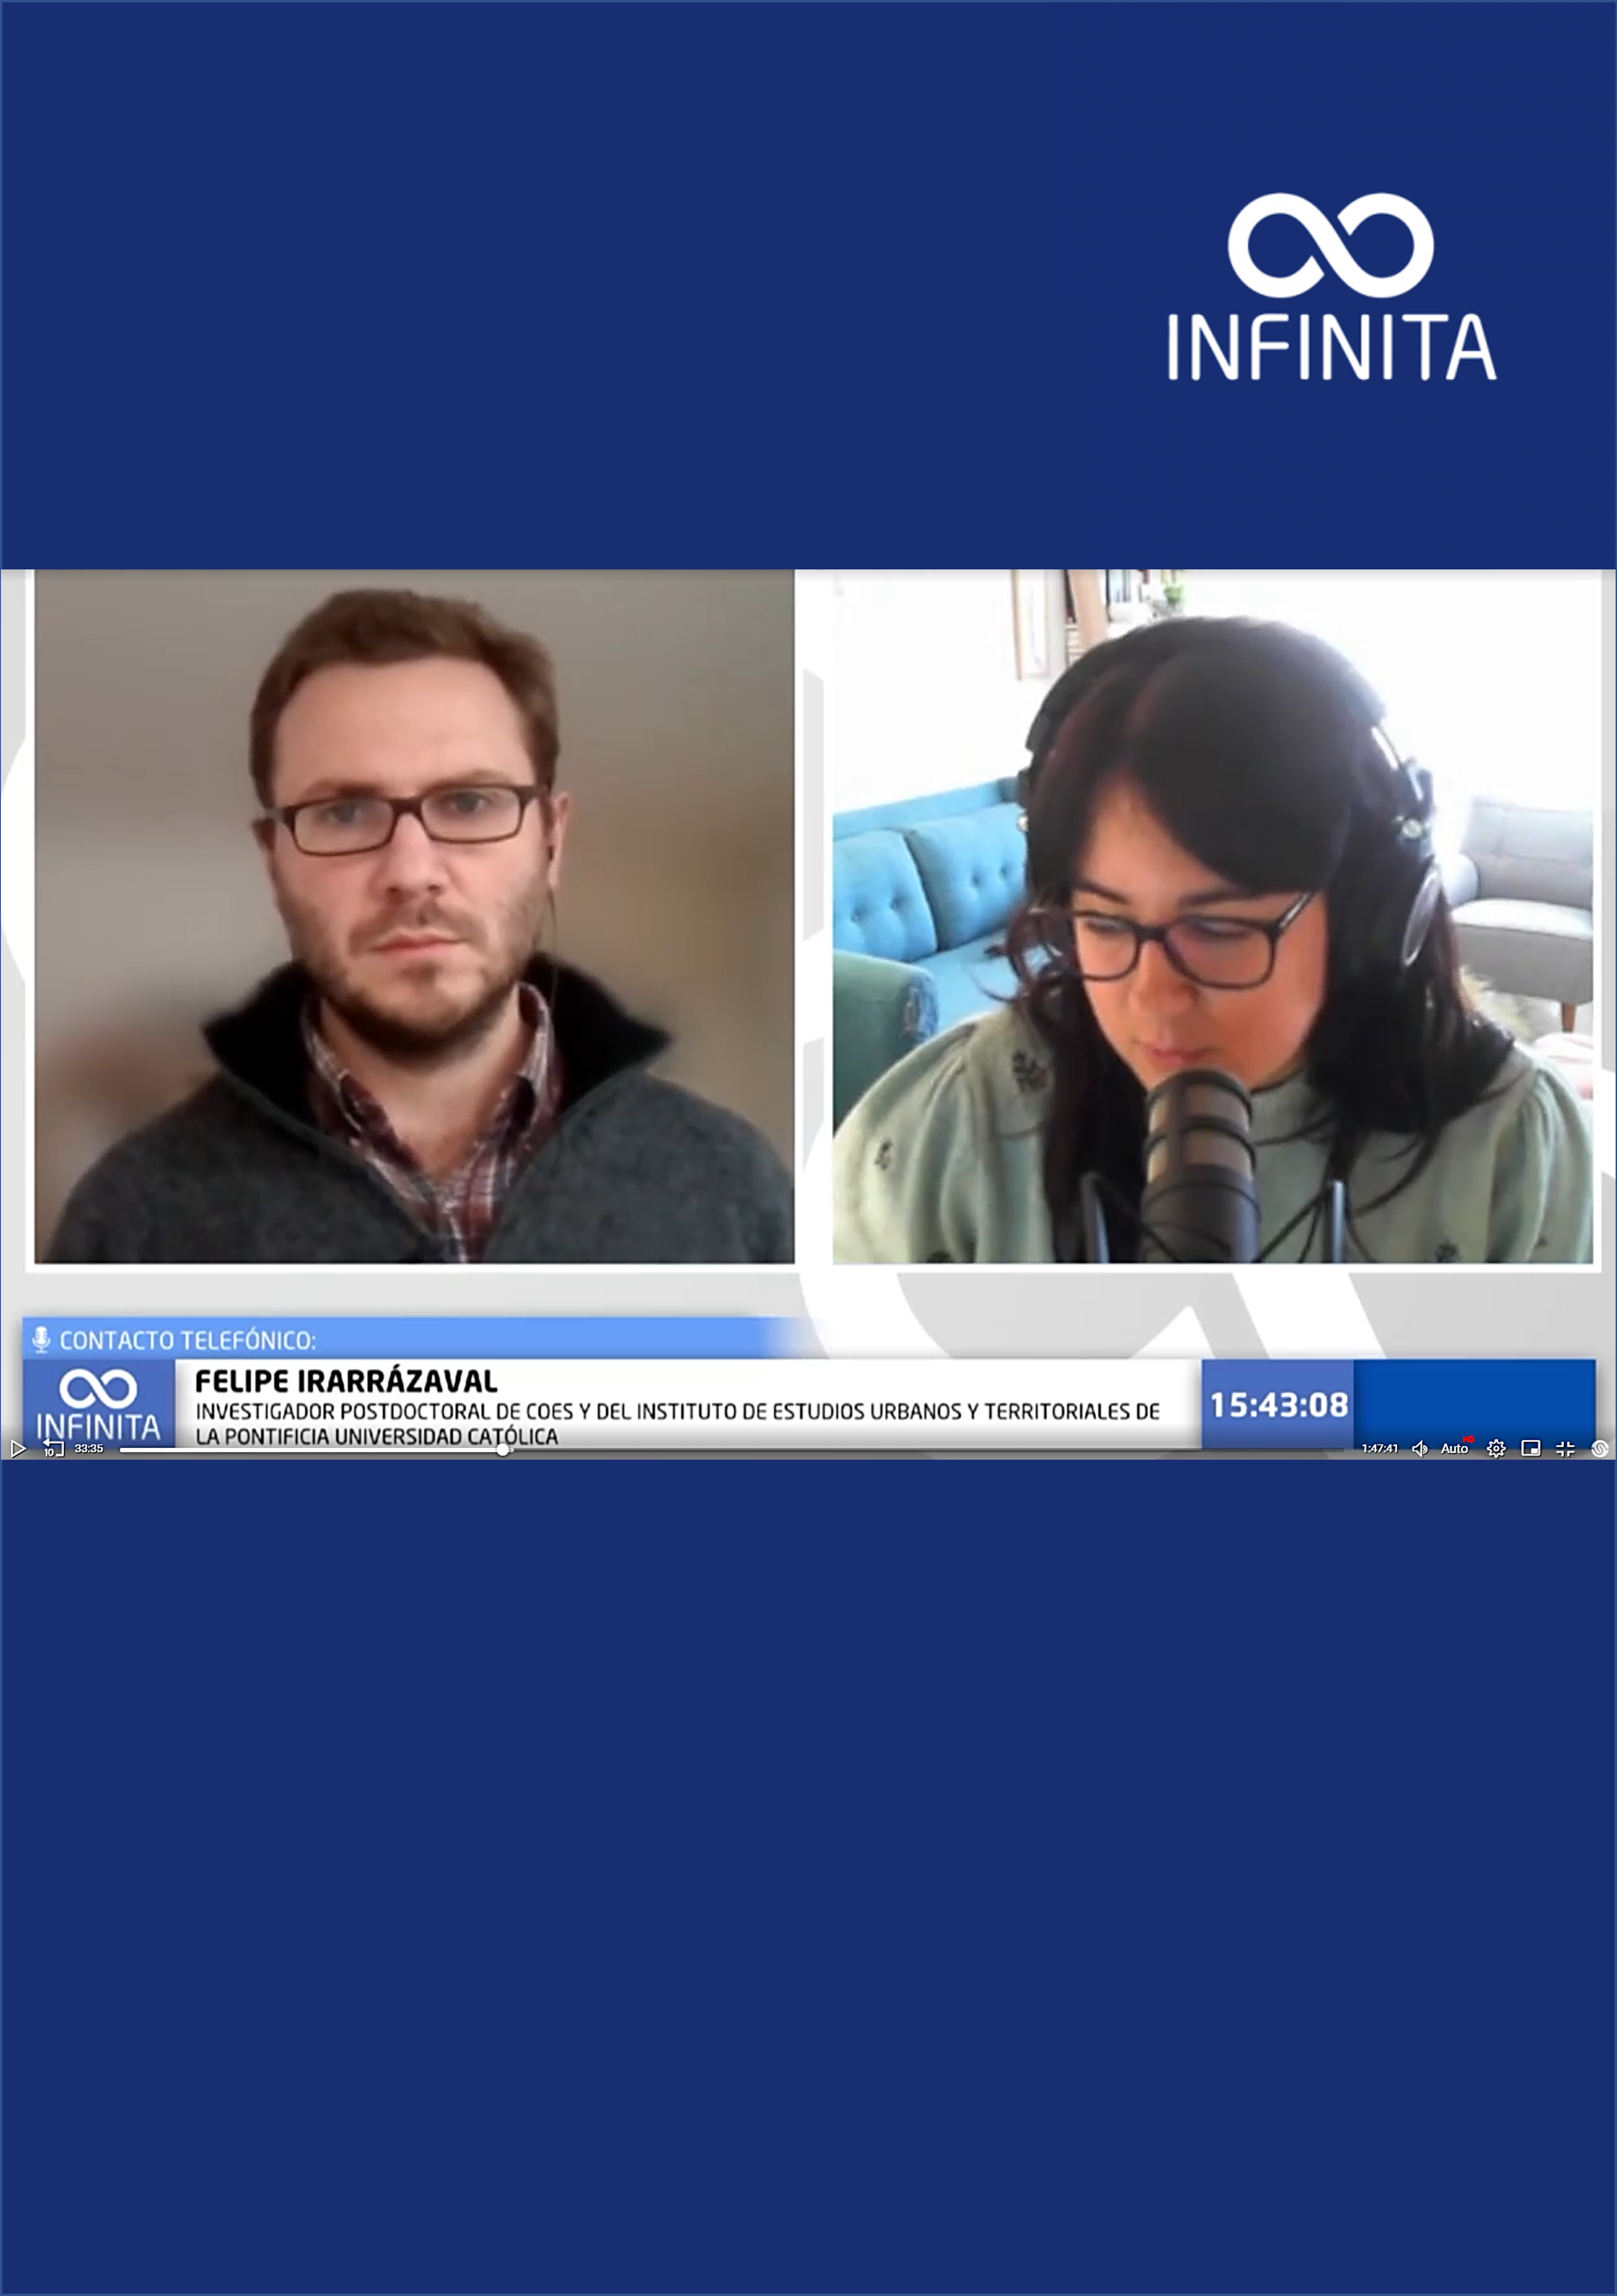 Radio Infinita –Qué impacto han tenido las demandas socio territoriales en nuestra institucionalidad si se analizan desde 2009. Entrevista a Felipe Irarrázaval